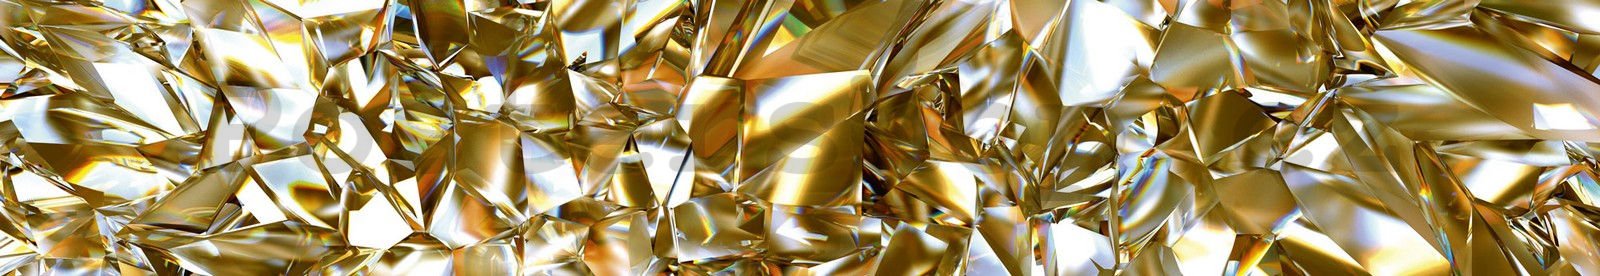 Samolepící omyvatelná tapeta za kuchyňskou linku - Zlaté krystaly, 350x60 cm